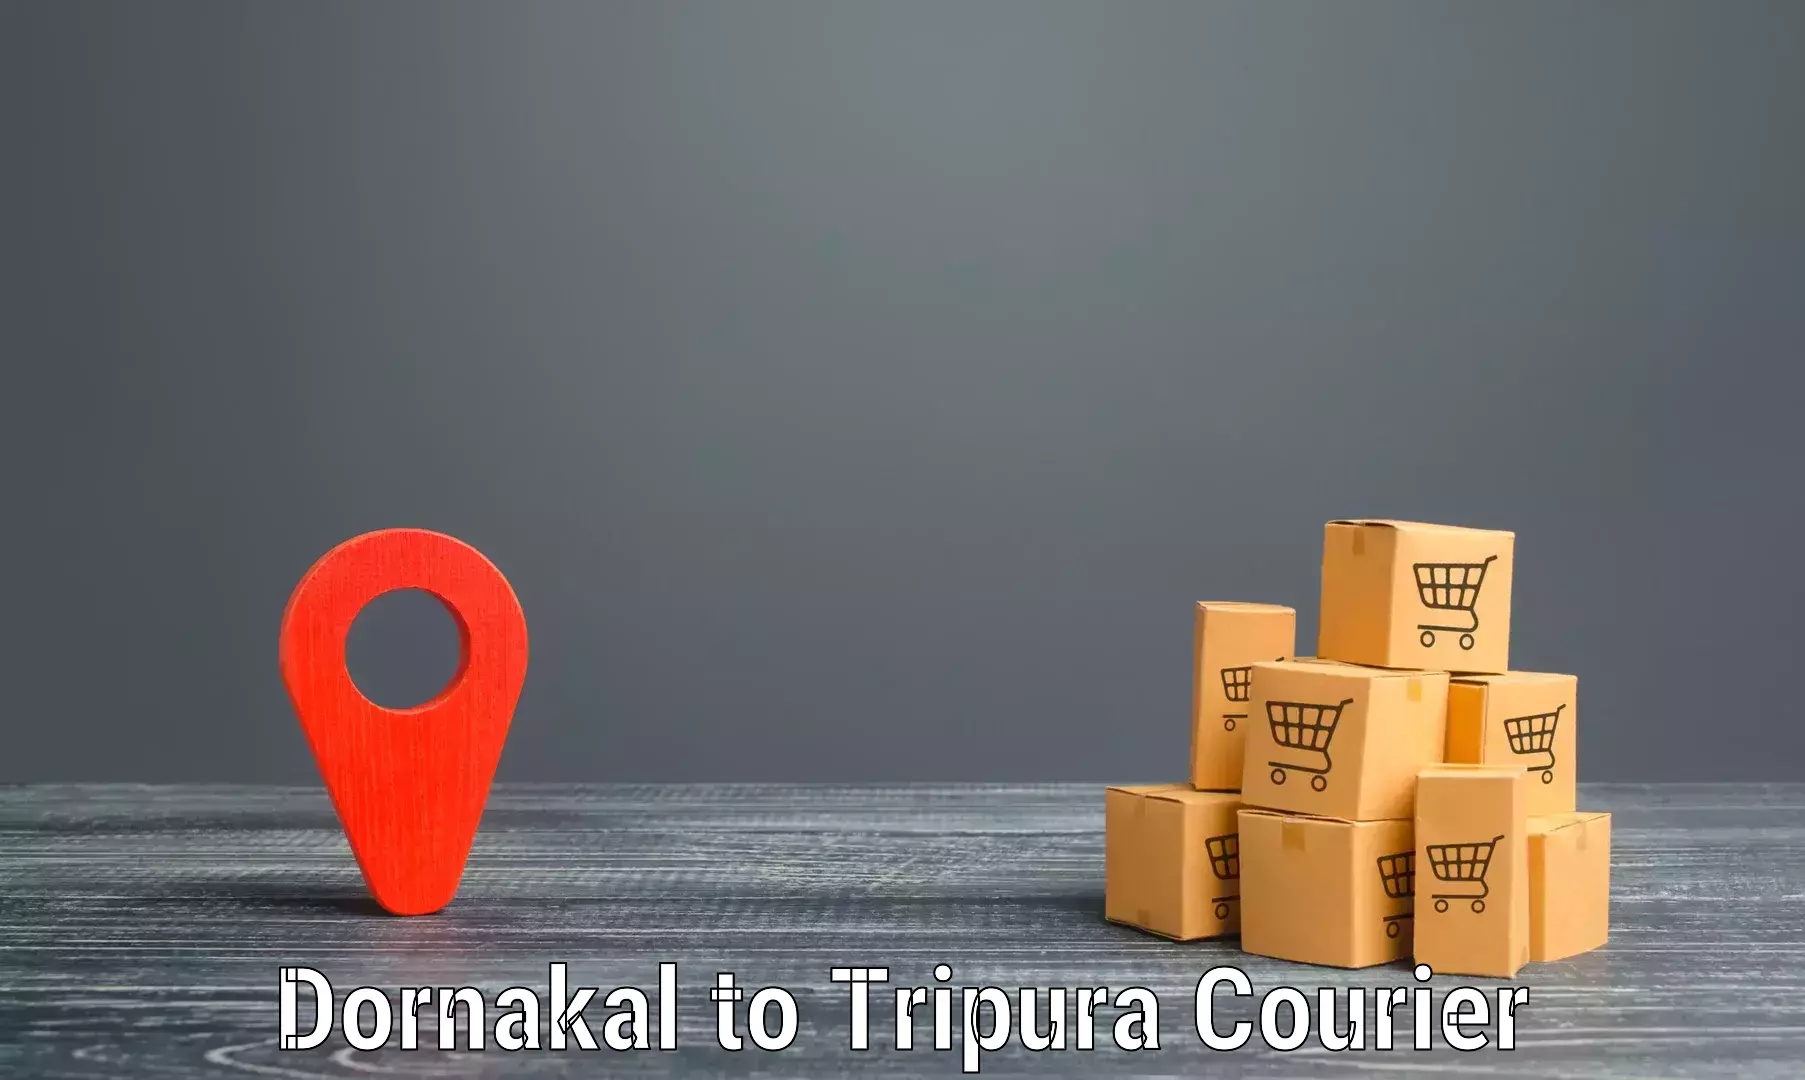 Digital courier platforms Dornakal to Tripura